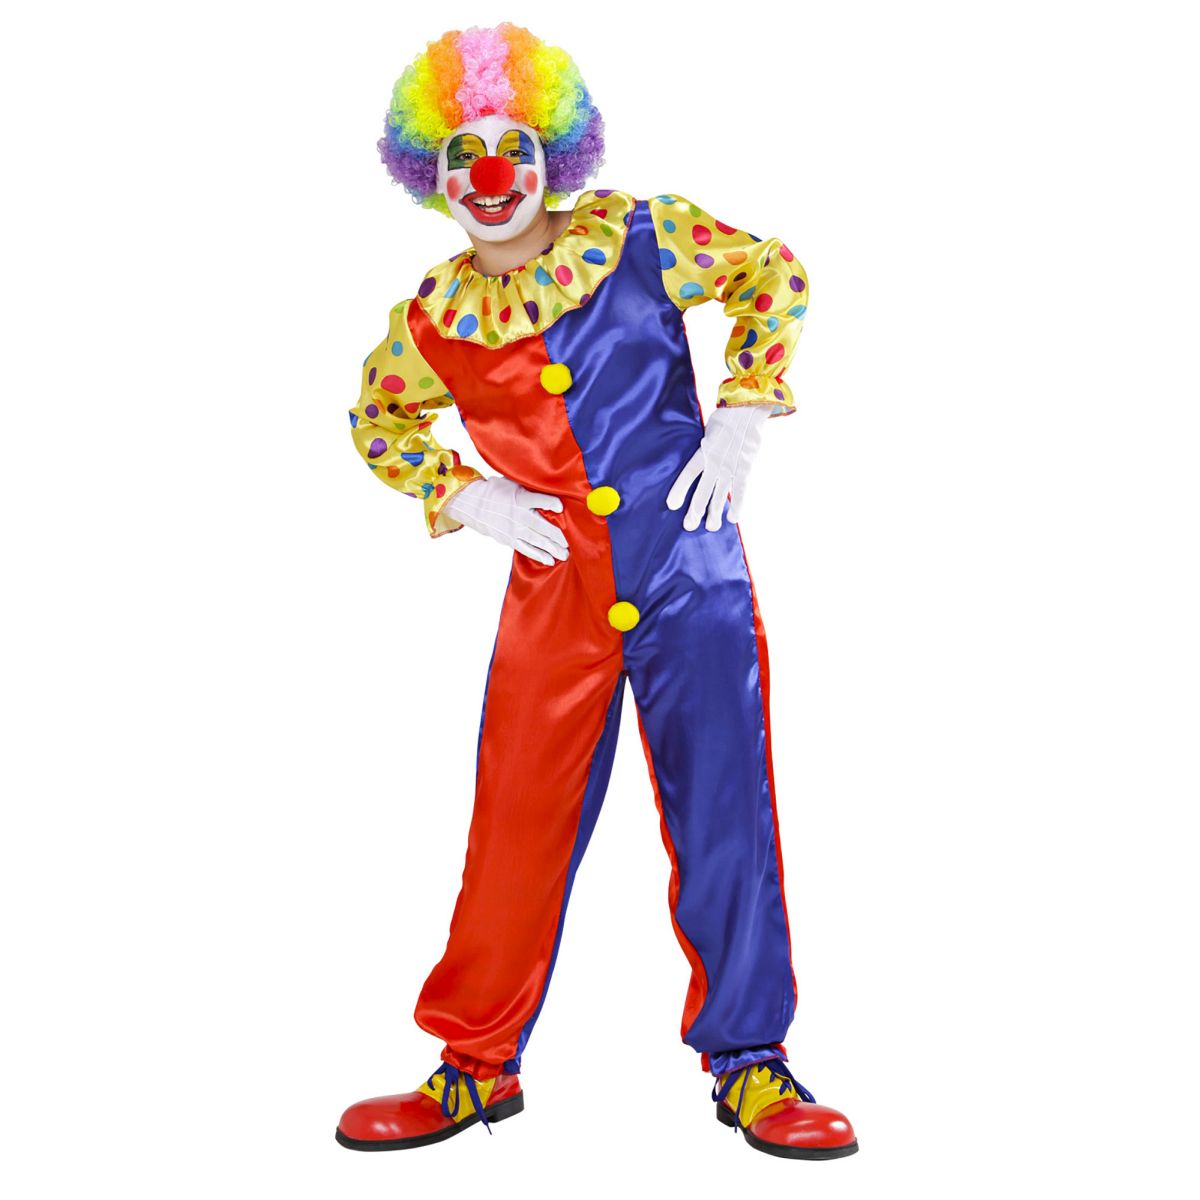 Clown Kostüm Kinderkostüm Clownskostüm mehrfarbig, Overall mit Kragen